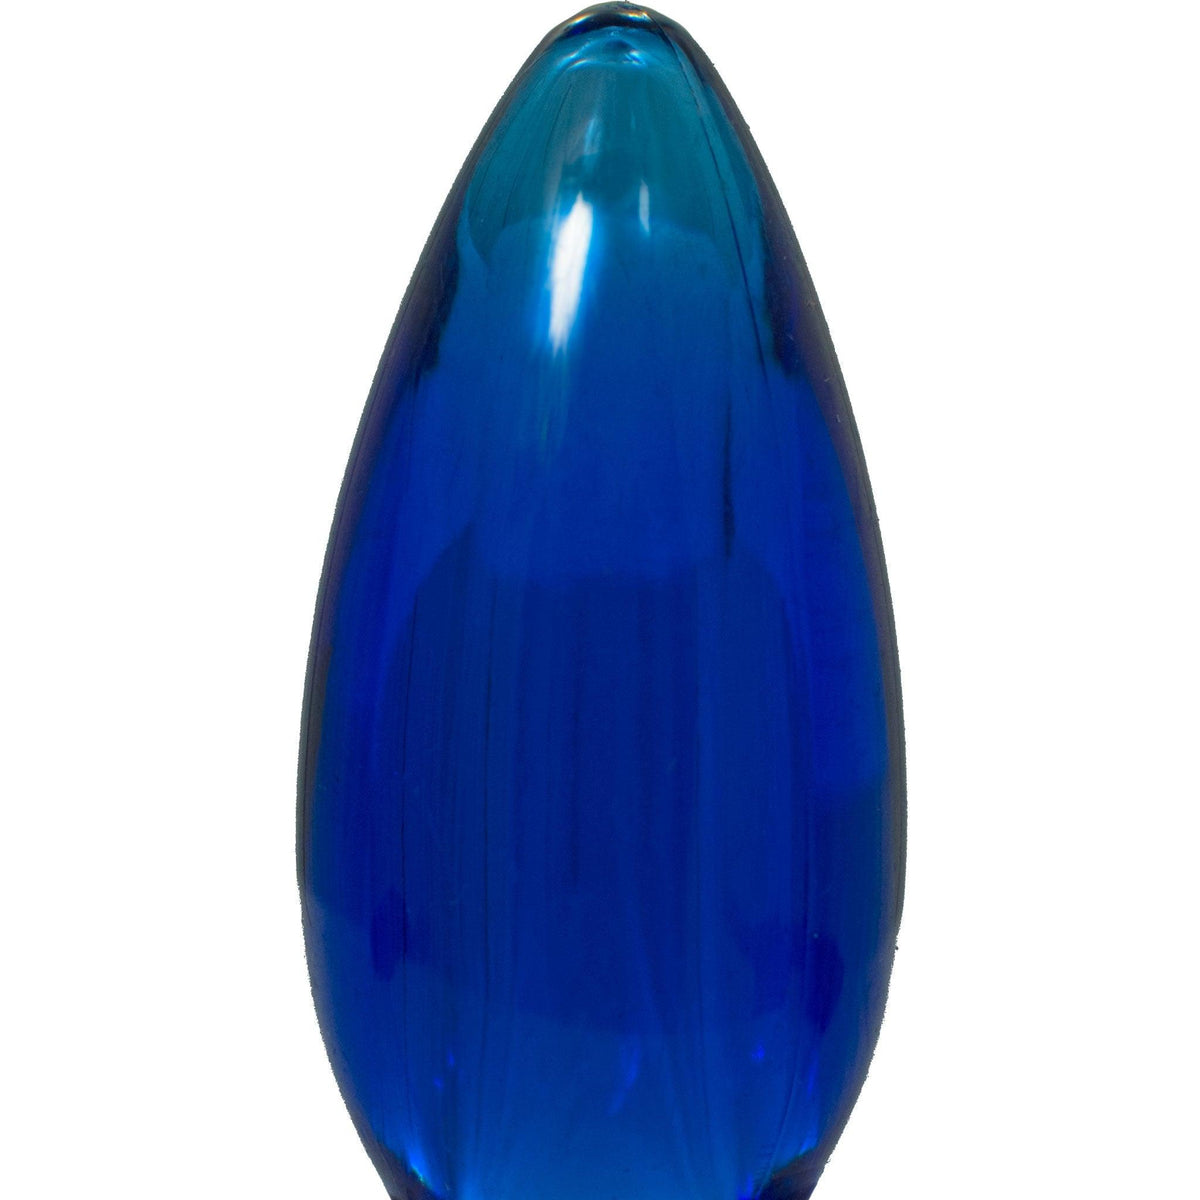 Blue LED Light Bulbs - Lee Display